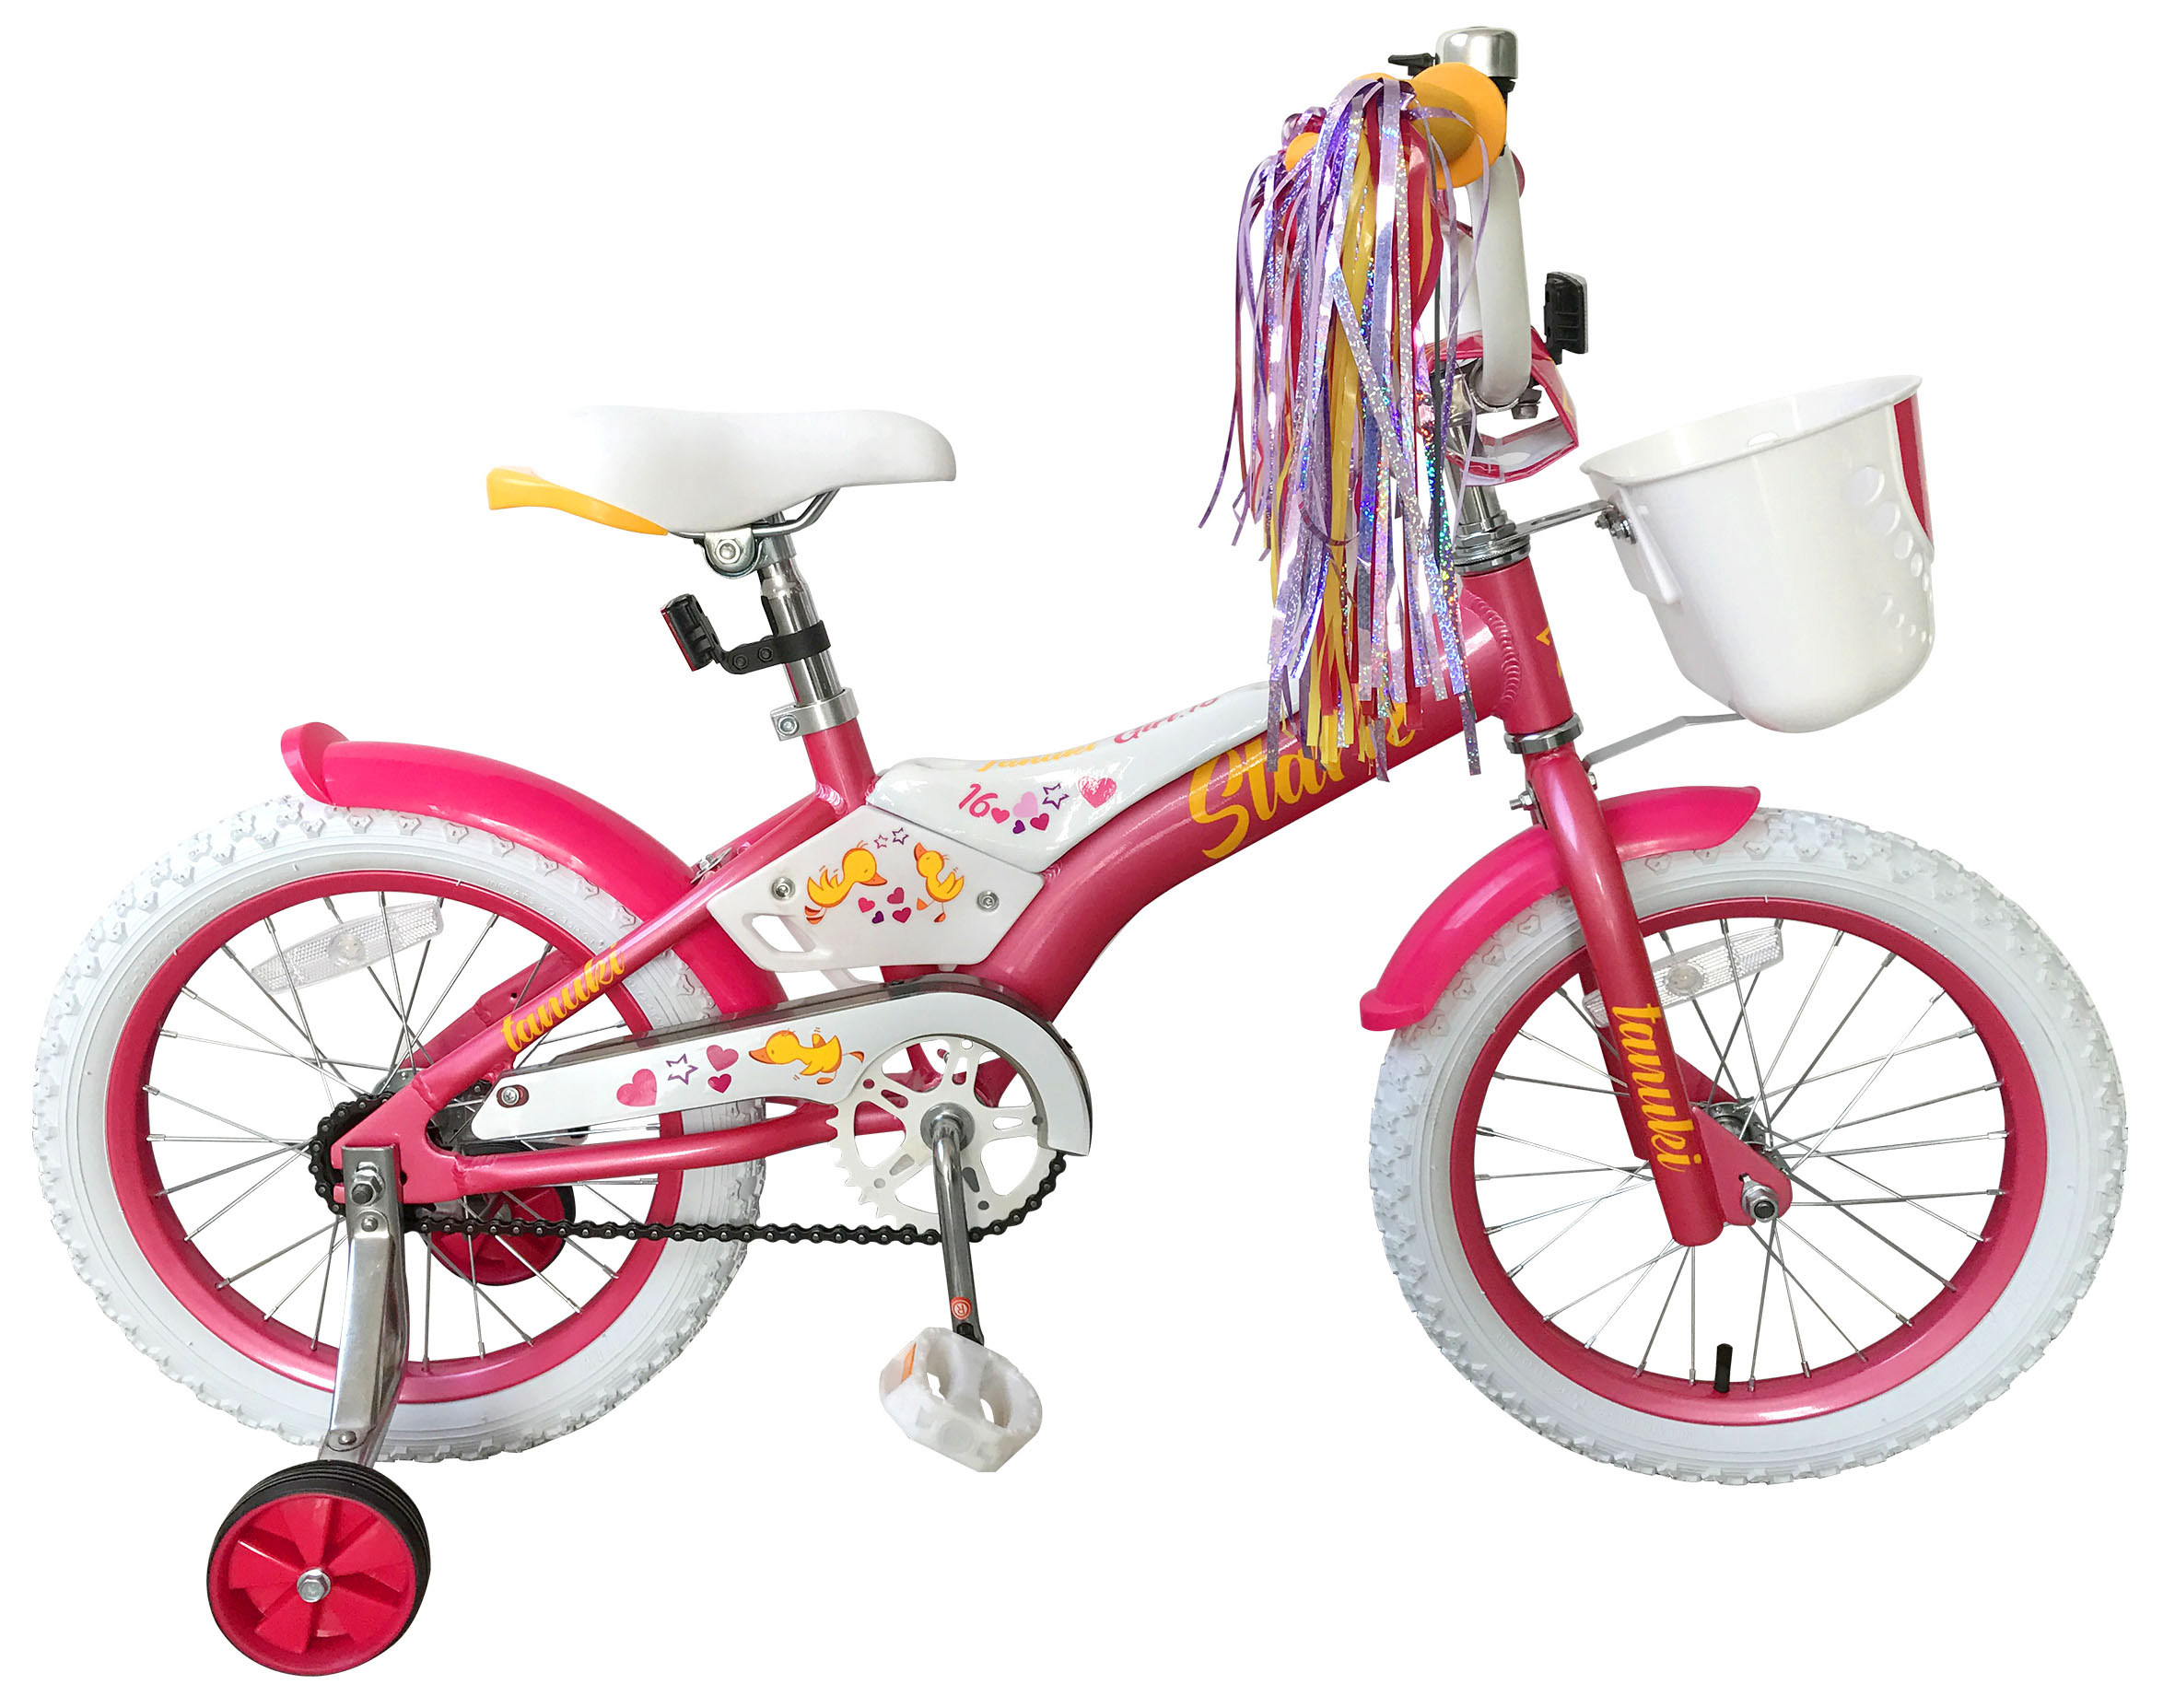  Отзывы о Детском велосипеде Stark Tanuki 16 Girl 2019